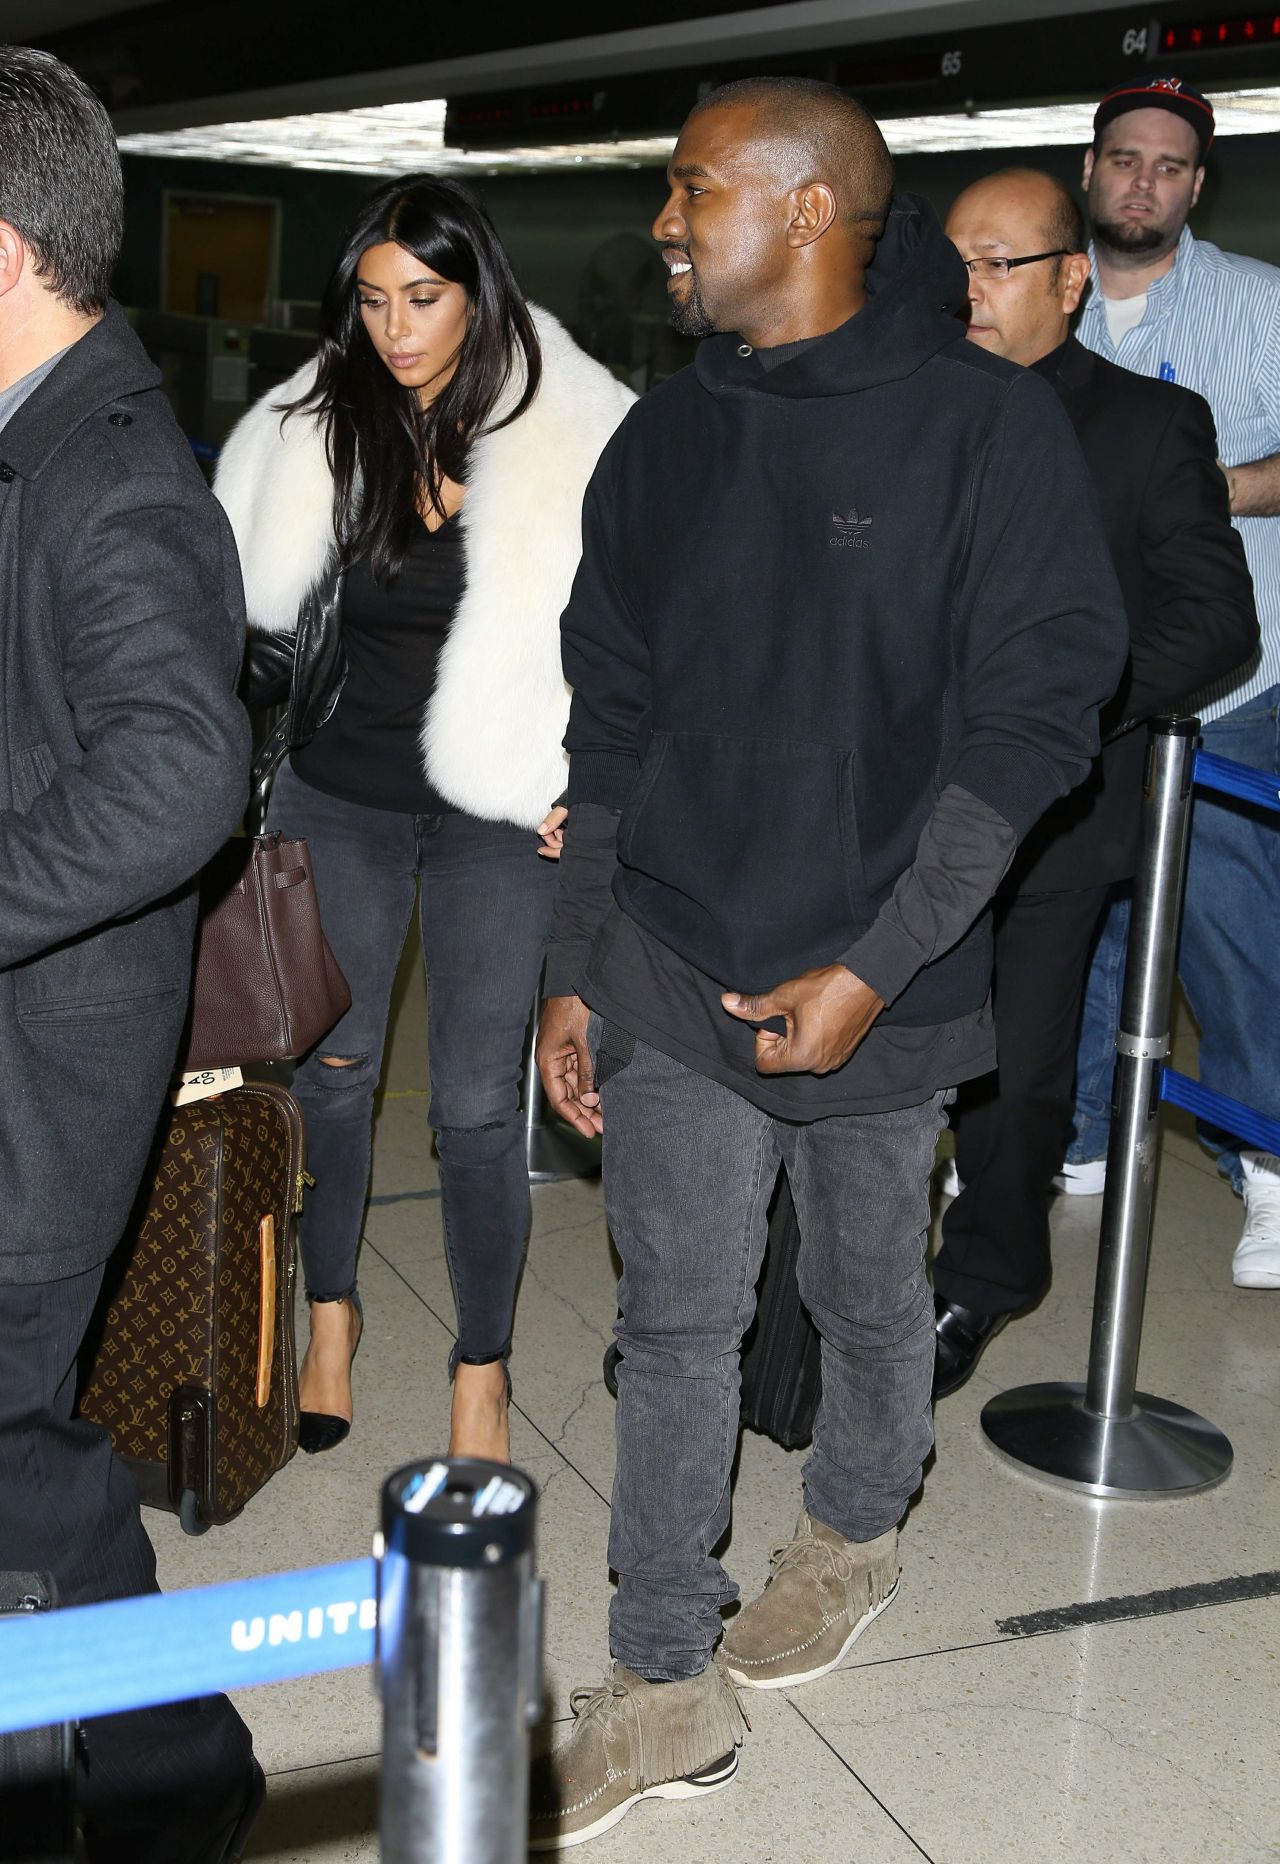 Kim Kardashian Arriving at LAX Airport May 1, 2012 – Star Style